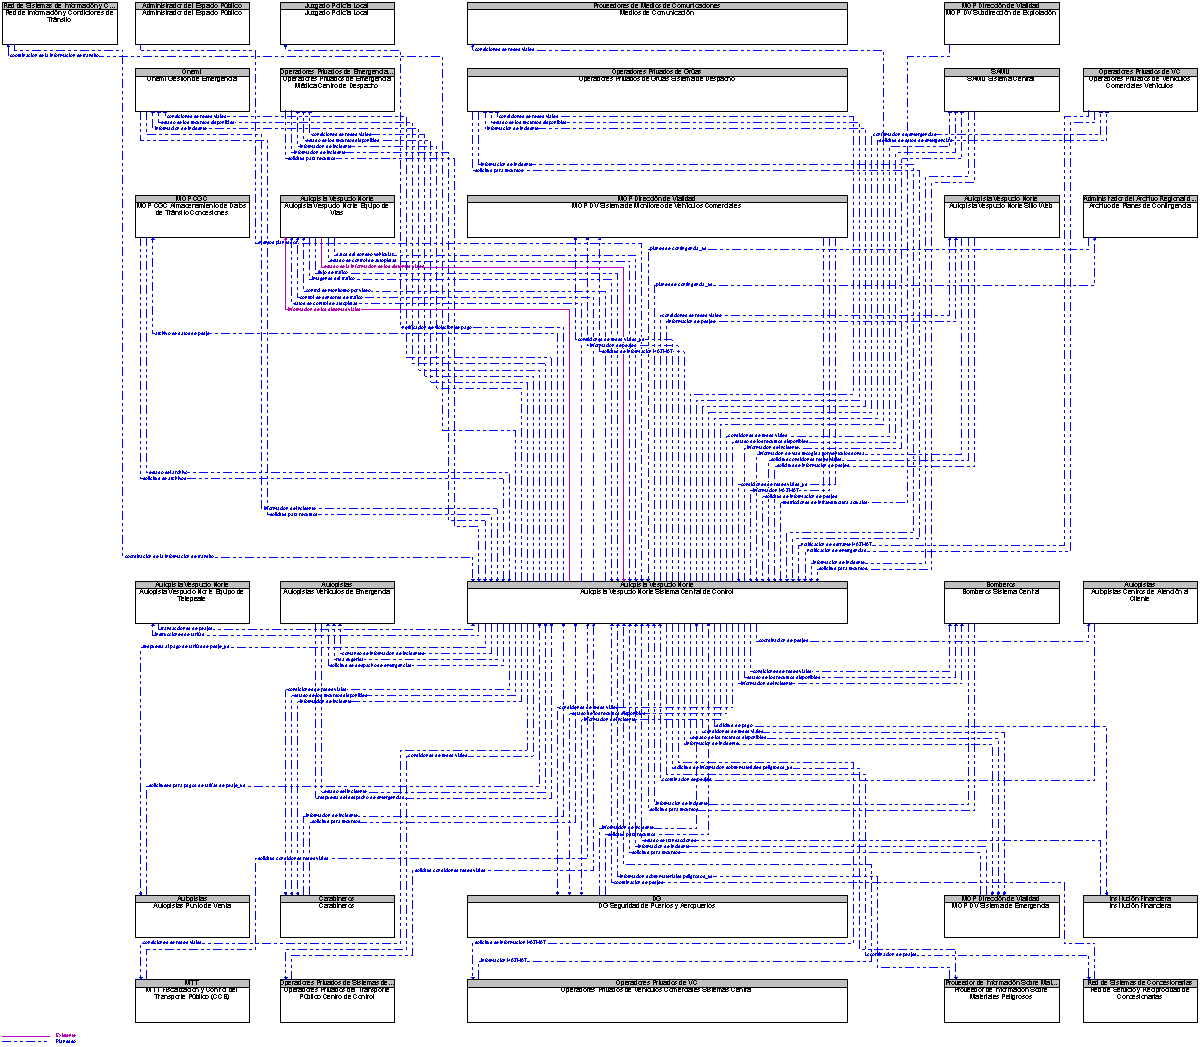 Diagrama Del Contexto por Autopista Vespucio Norte Sistema Central de Control